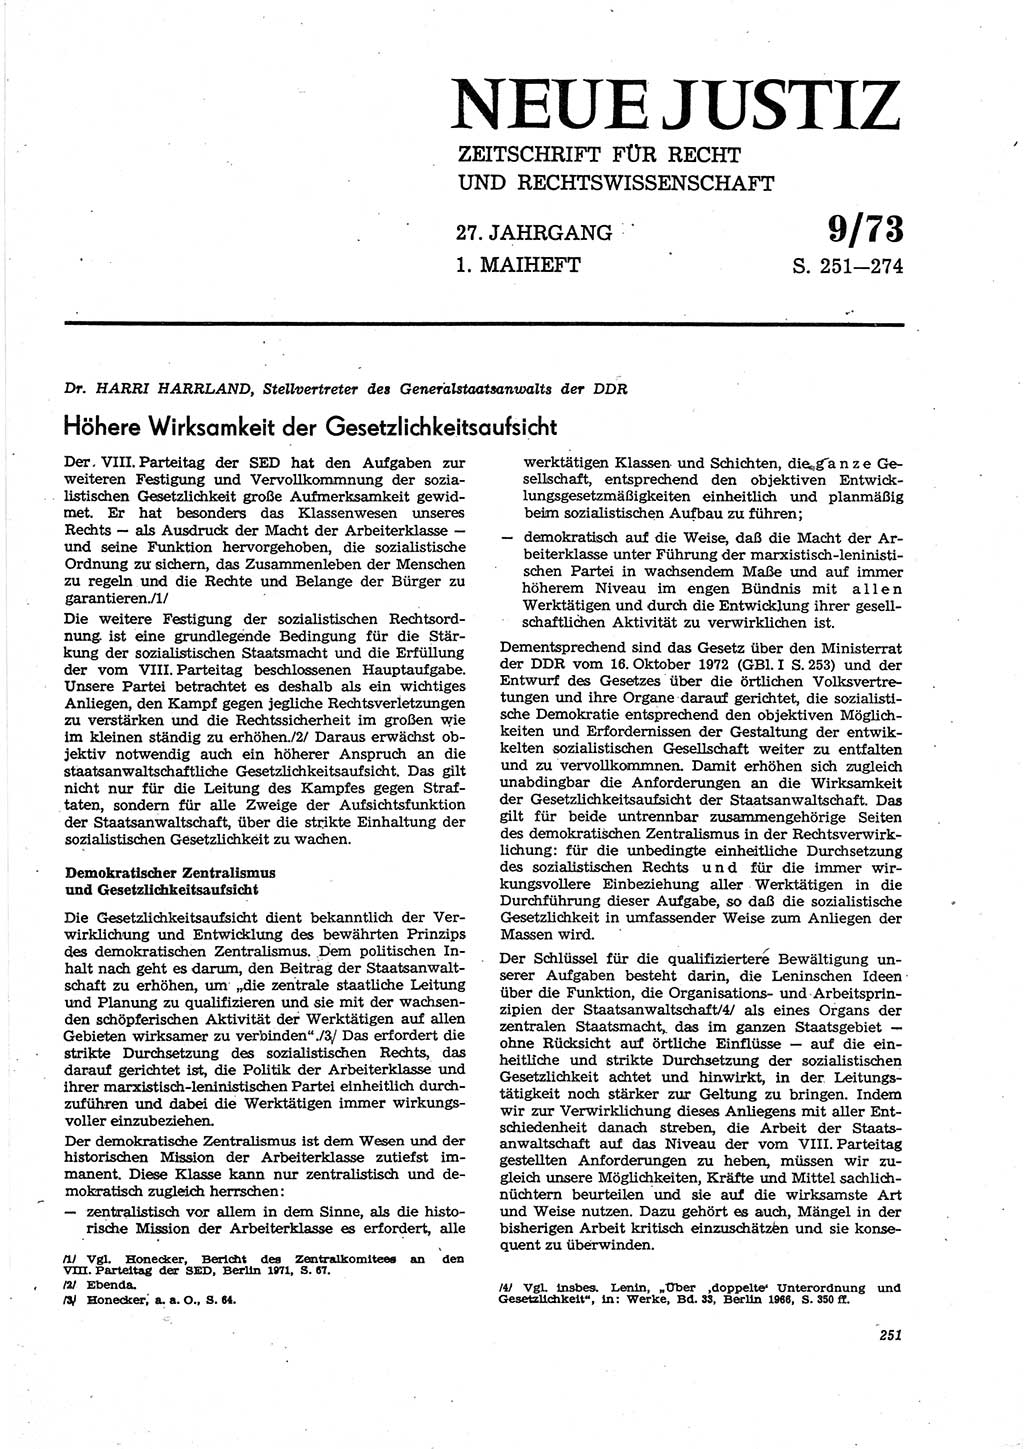 Neue Justiz (NJ), Zeitschrift für Recht und Rechtswissenschaft [Deutsche Demokratische Republik (DDR)], 27. Jahrgang 1973, Seite 251 (NJ DDR 1973, S. 251)